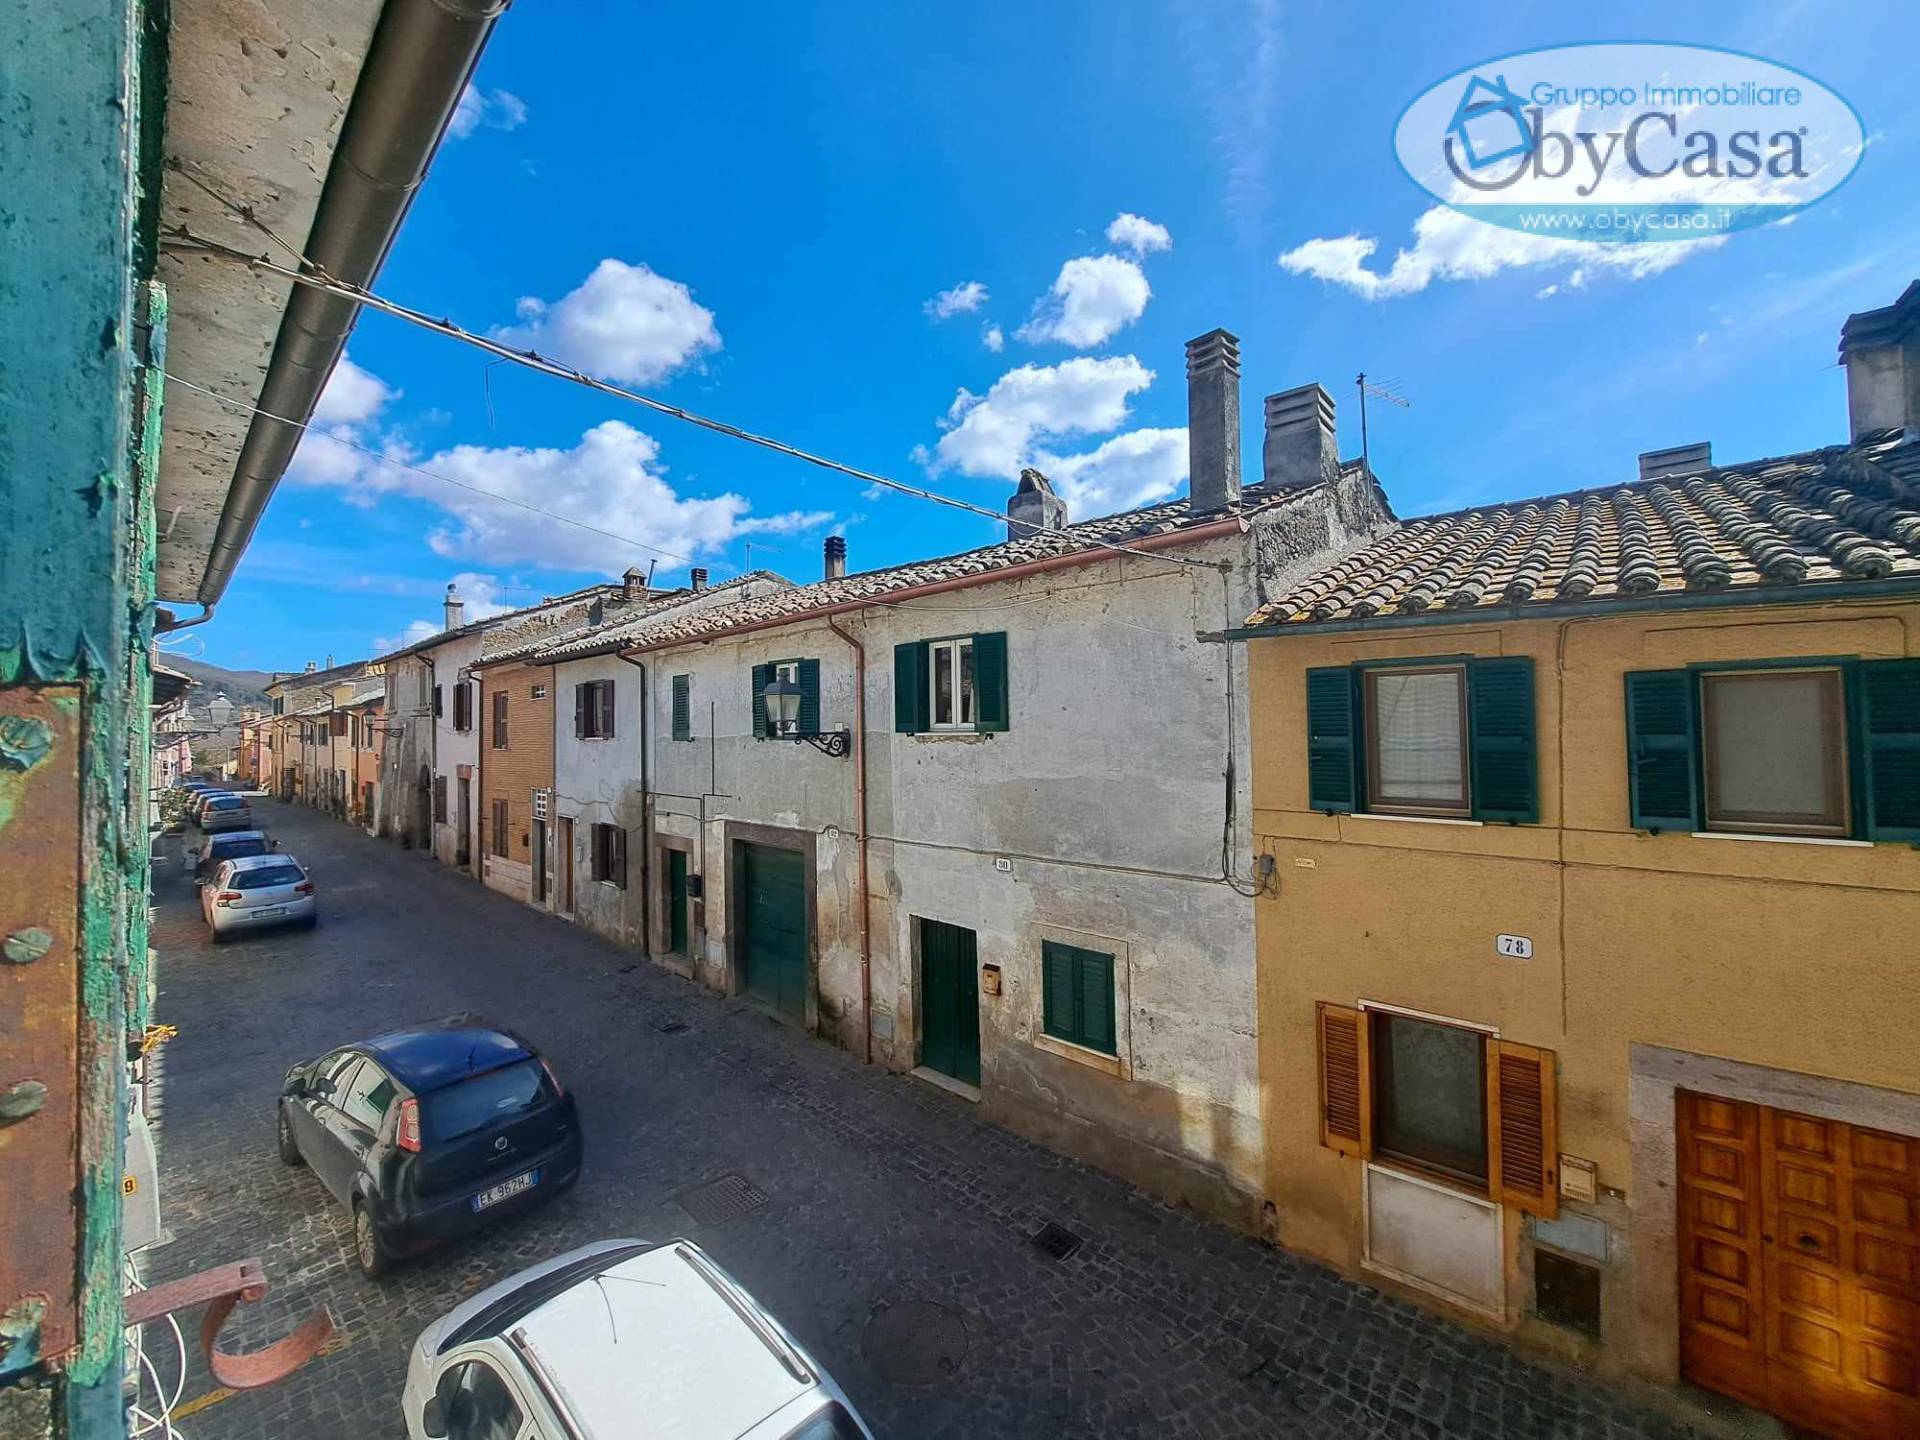 Appartamento in vendita a Oriolo Romano, 4 locali, prezzo € 38.000 | PortaleAgenzieImmobiliari.it